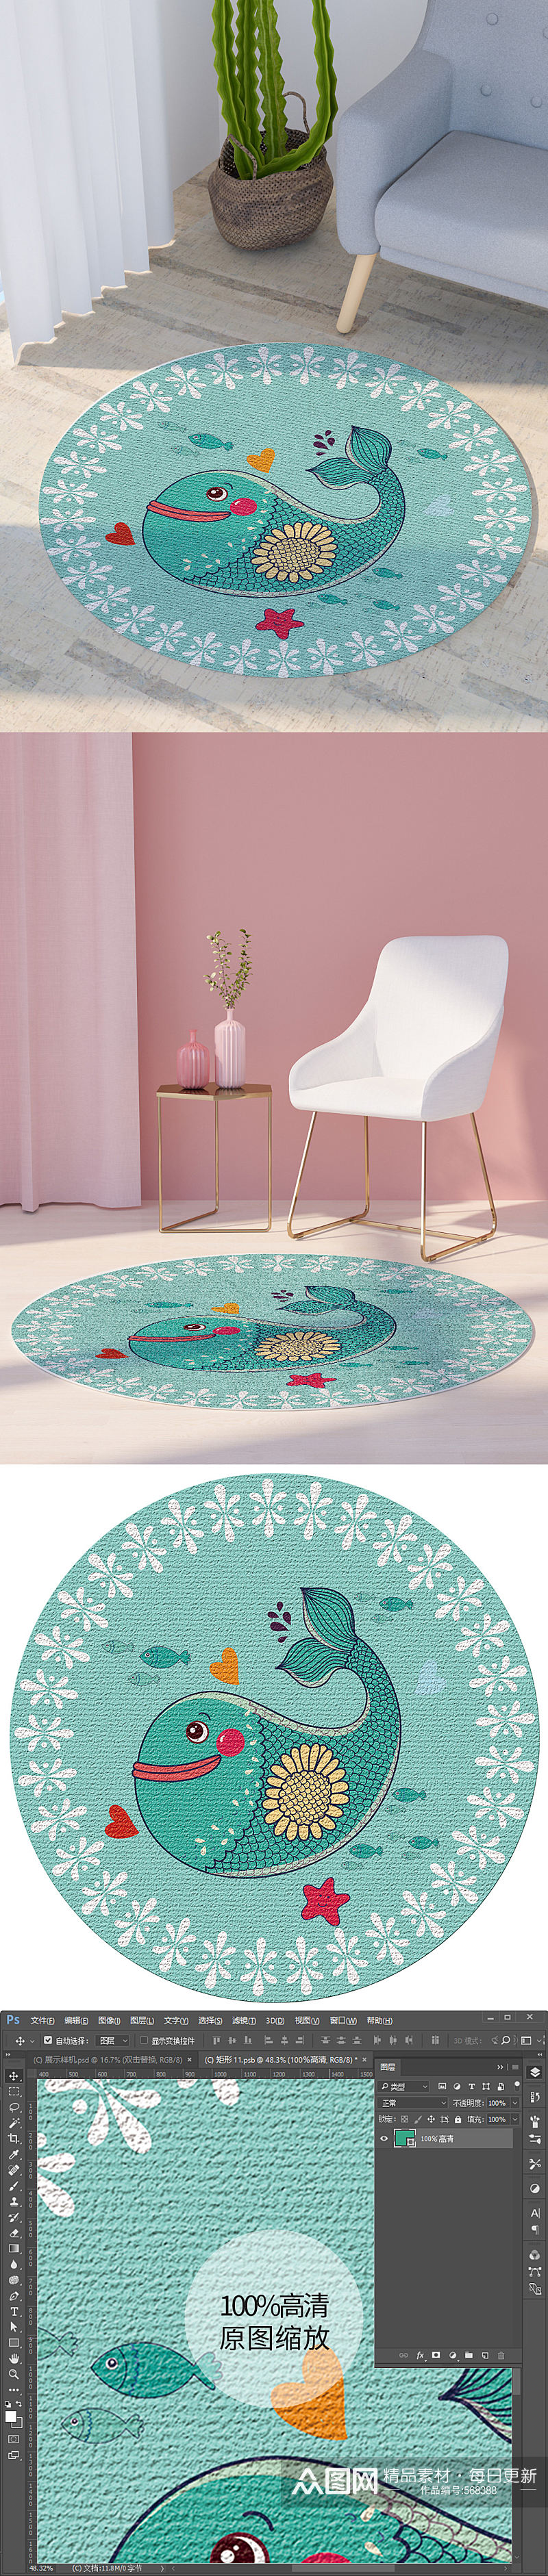 蓝色花纹印花可爱卡通海豚鲸鱼圆形地毯图素材